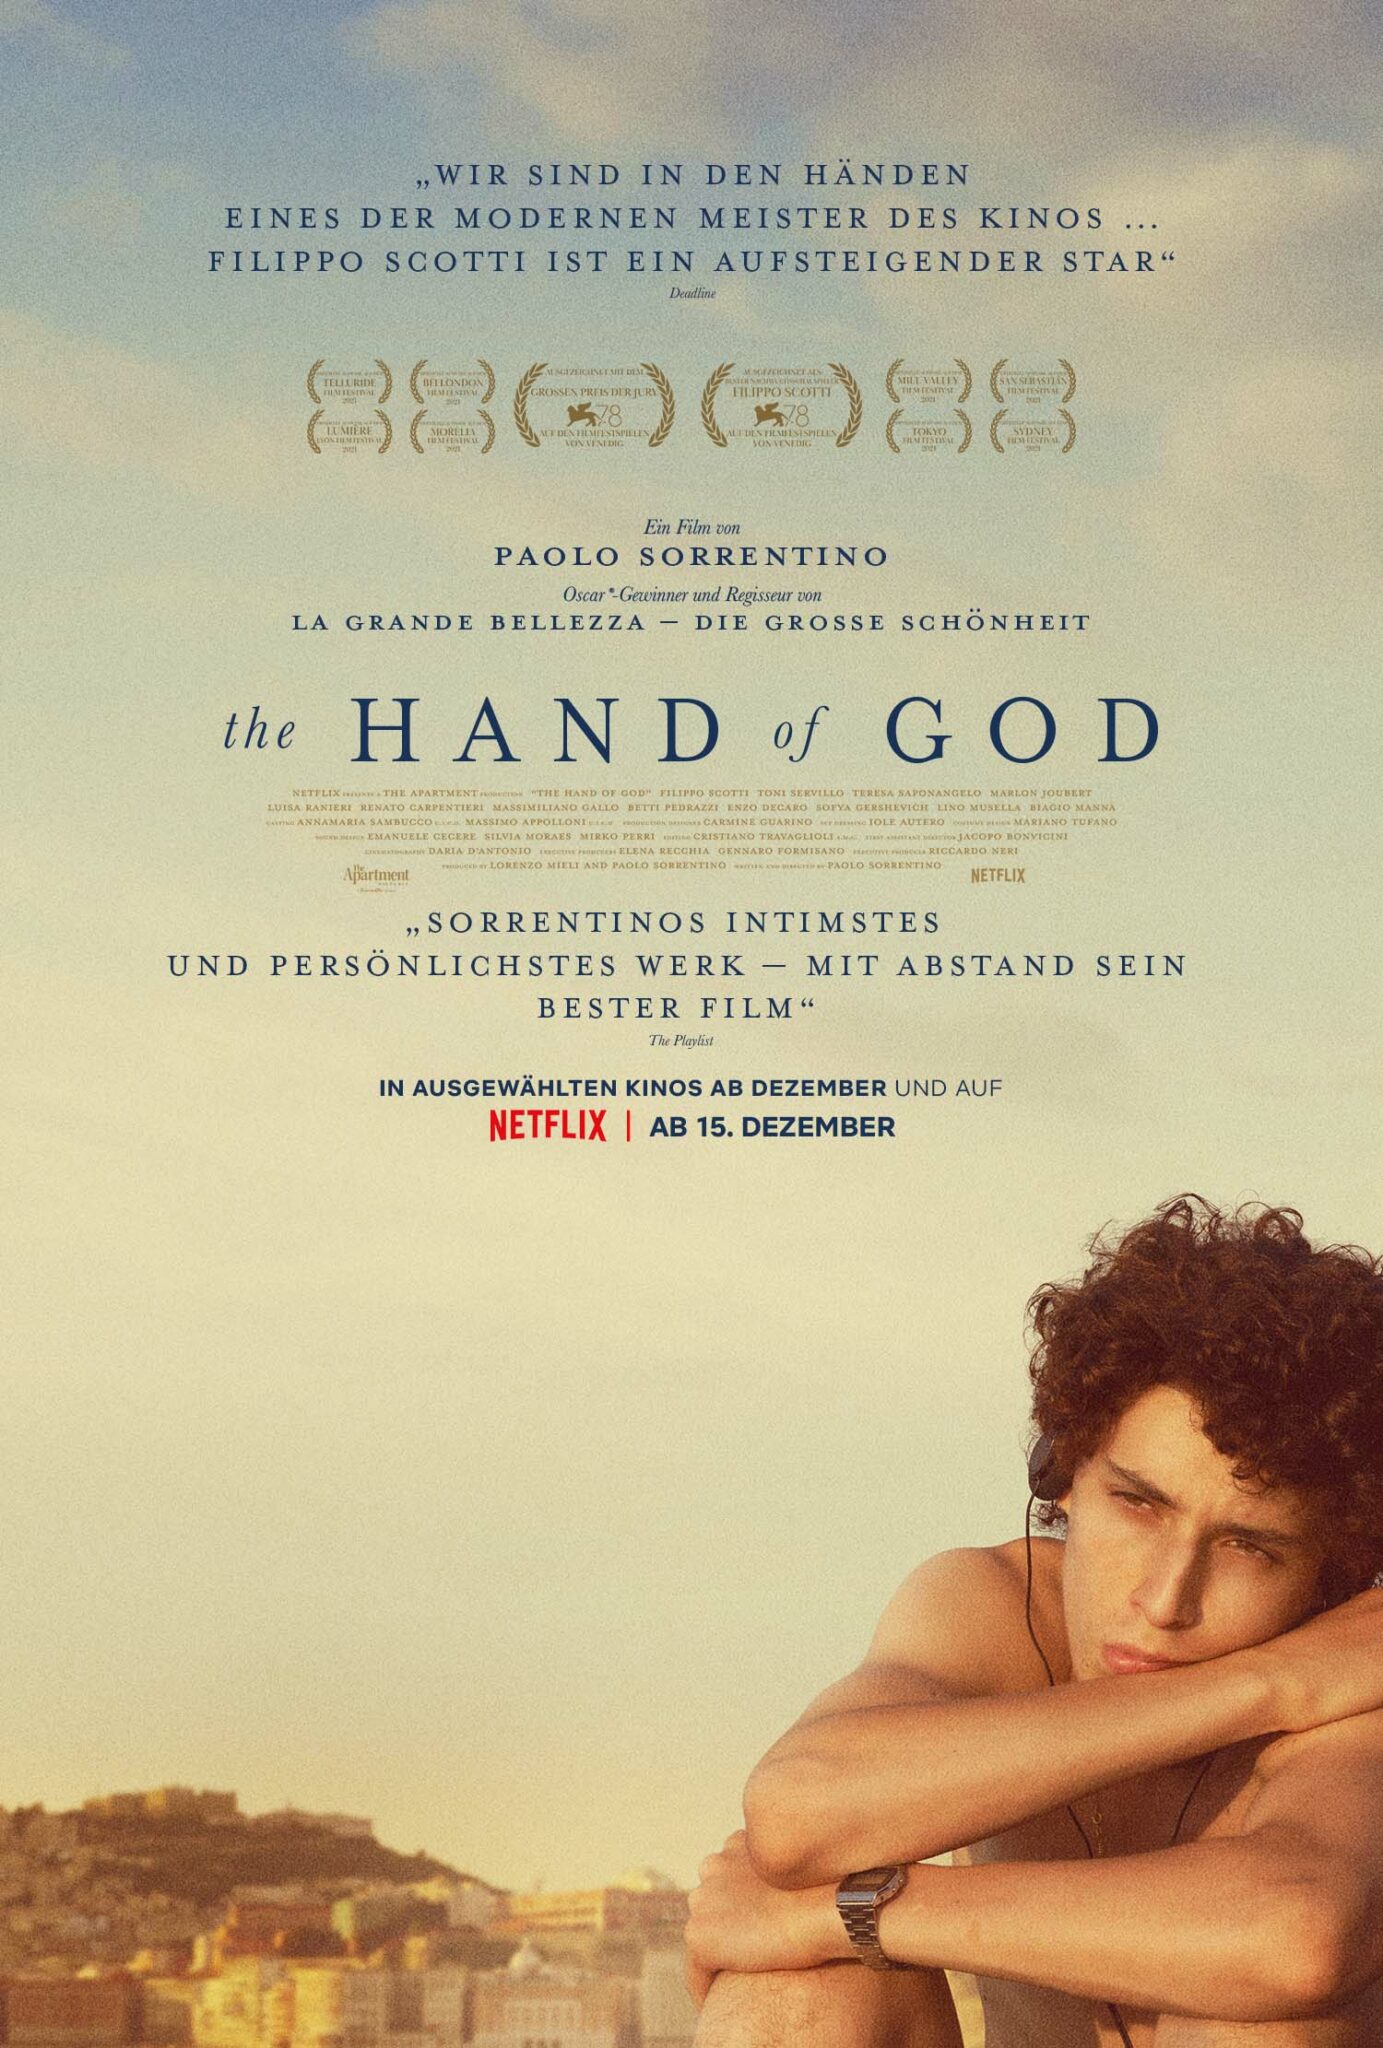 Das deutsche Plakat zu The Hand of God mit dem Titel in der oberen Hälfte und der Hauptfigur unten, rechts am Rand.